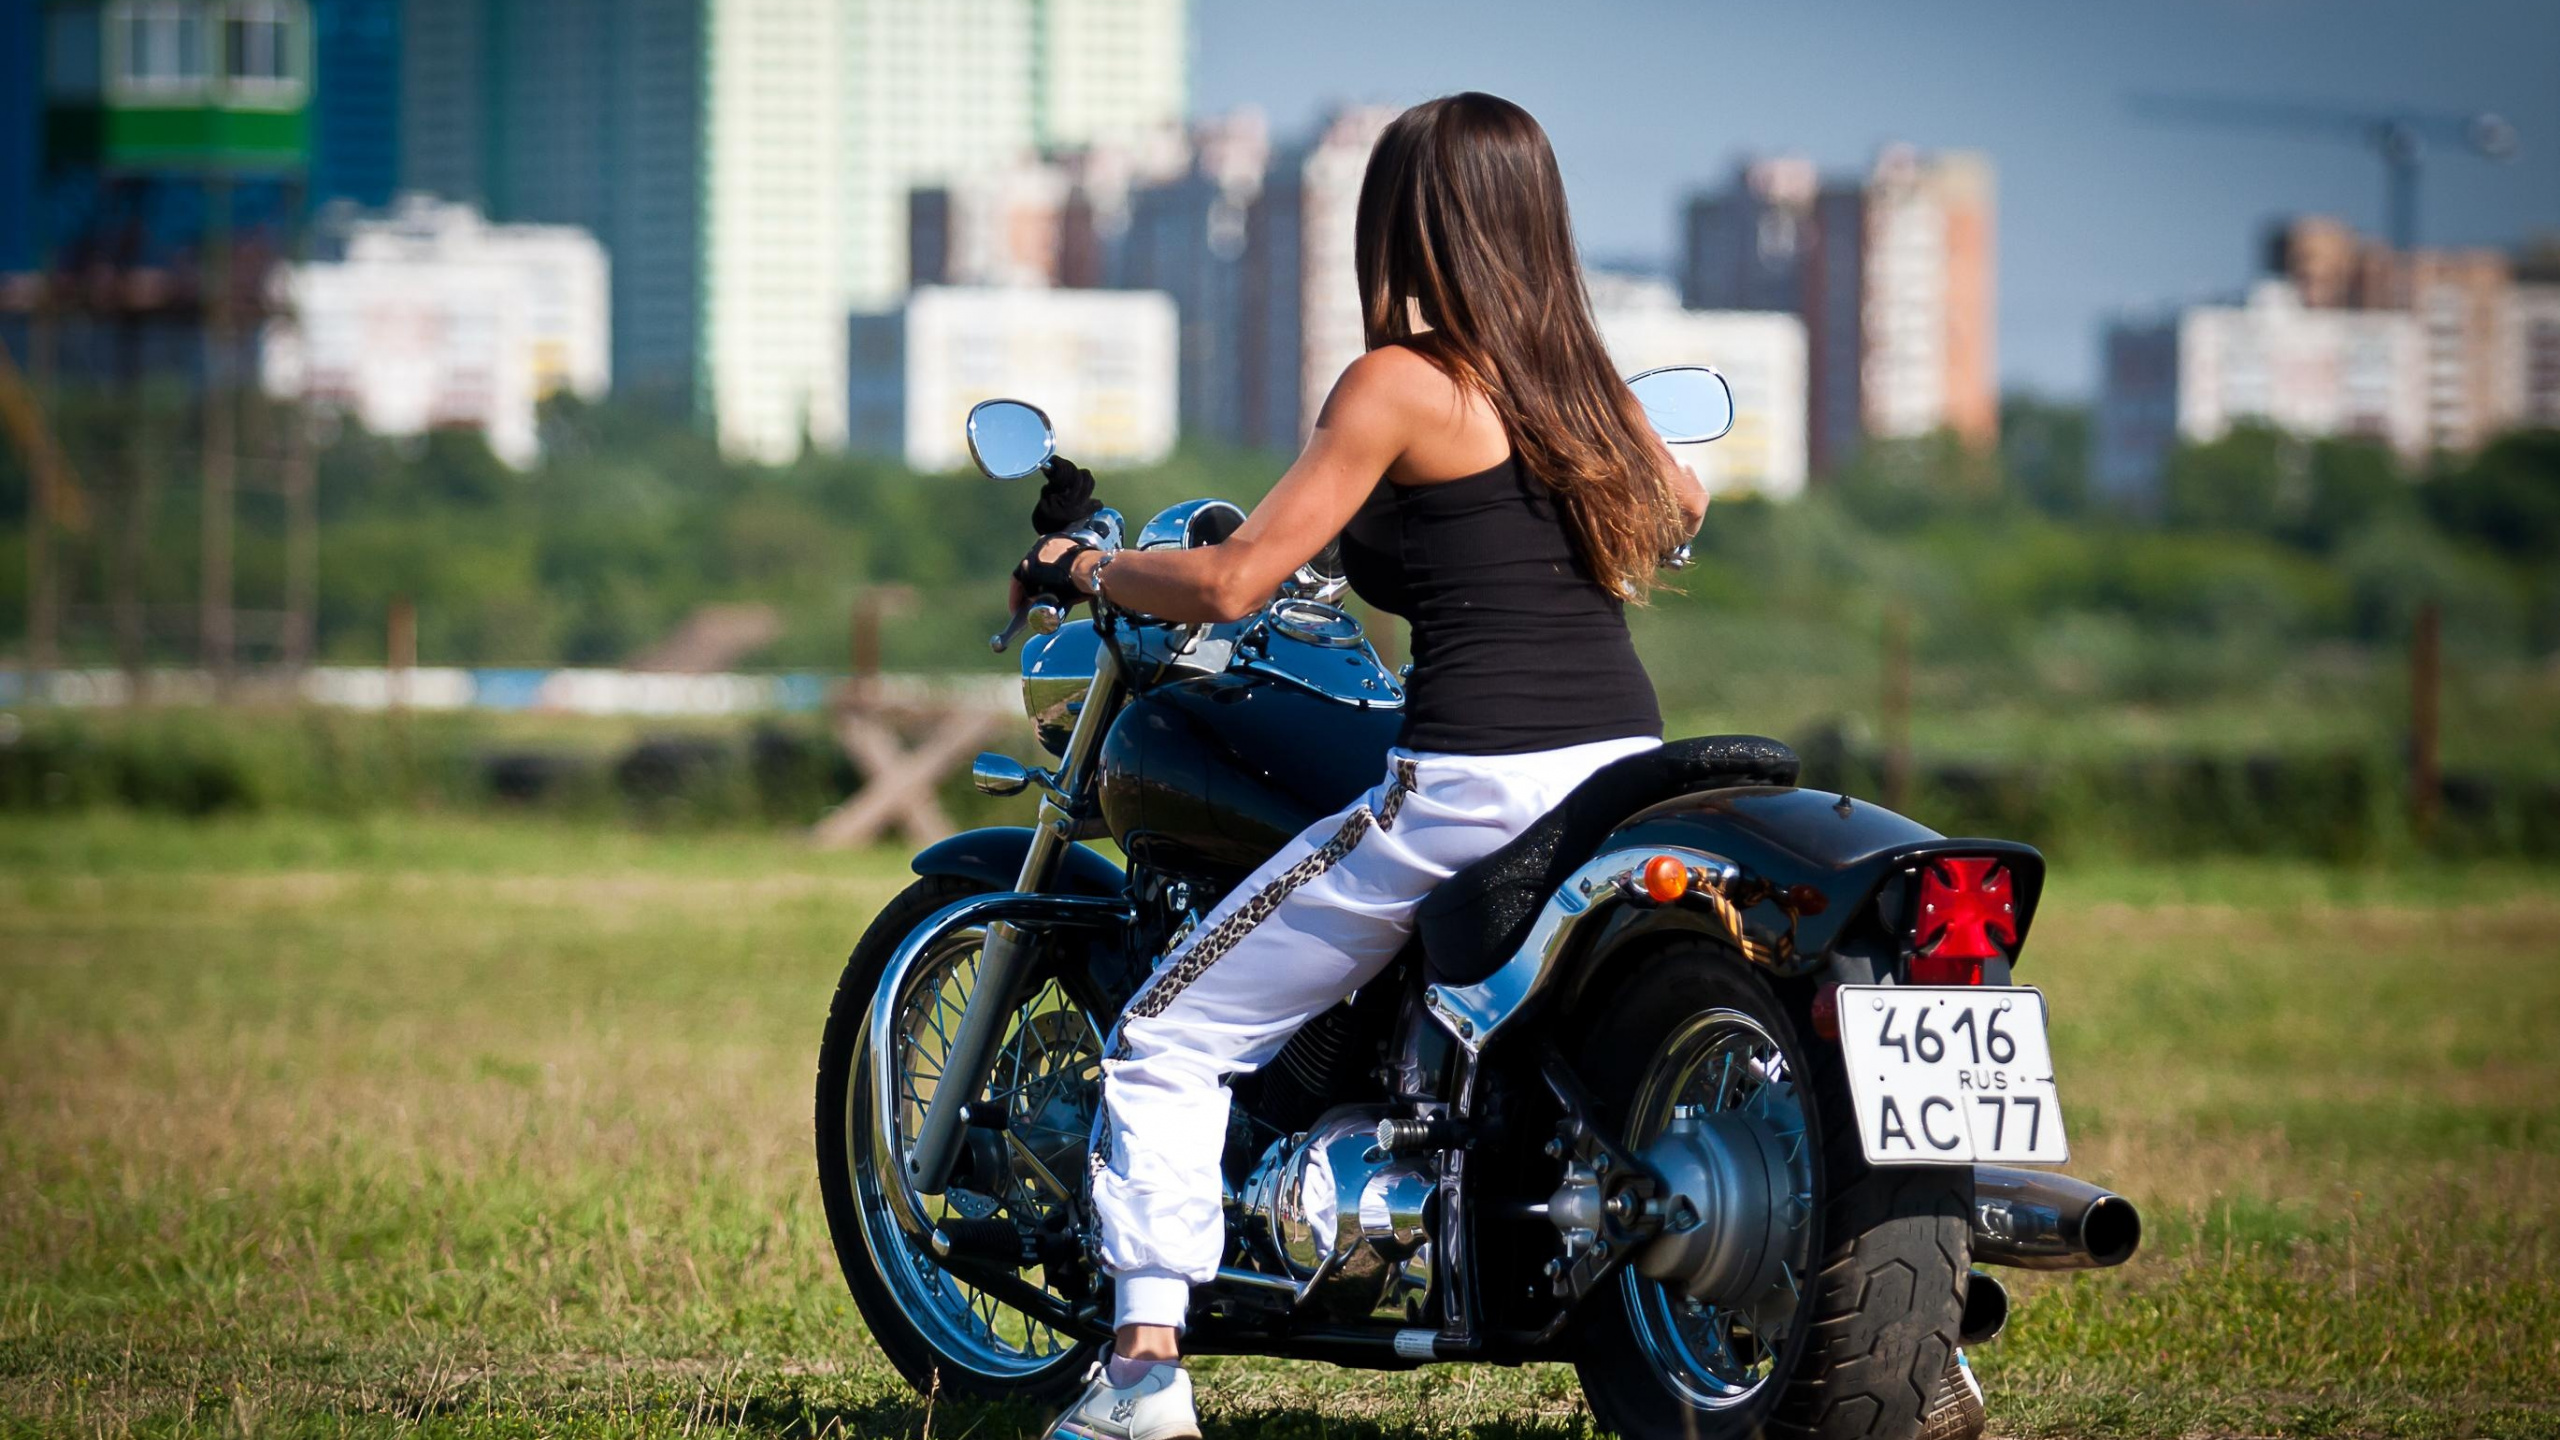 Frau im Blauen Tanktop, Die Tagsüber Auf Einem Schwarz-weißen Motorrad Fährt. Wallpaper in 2560x1440 Resolution